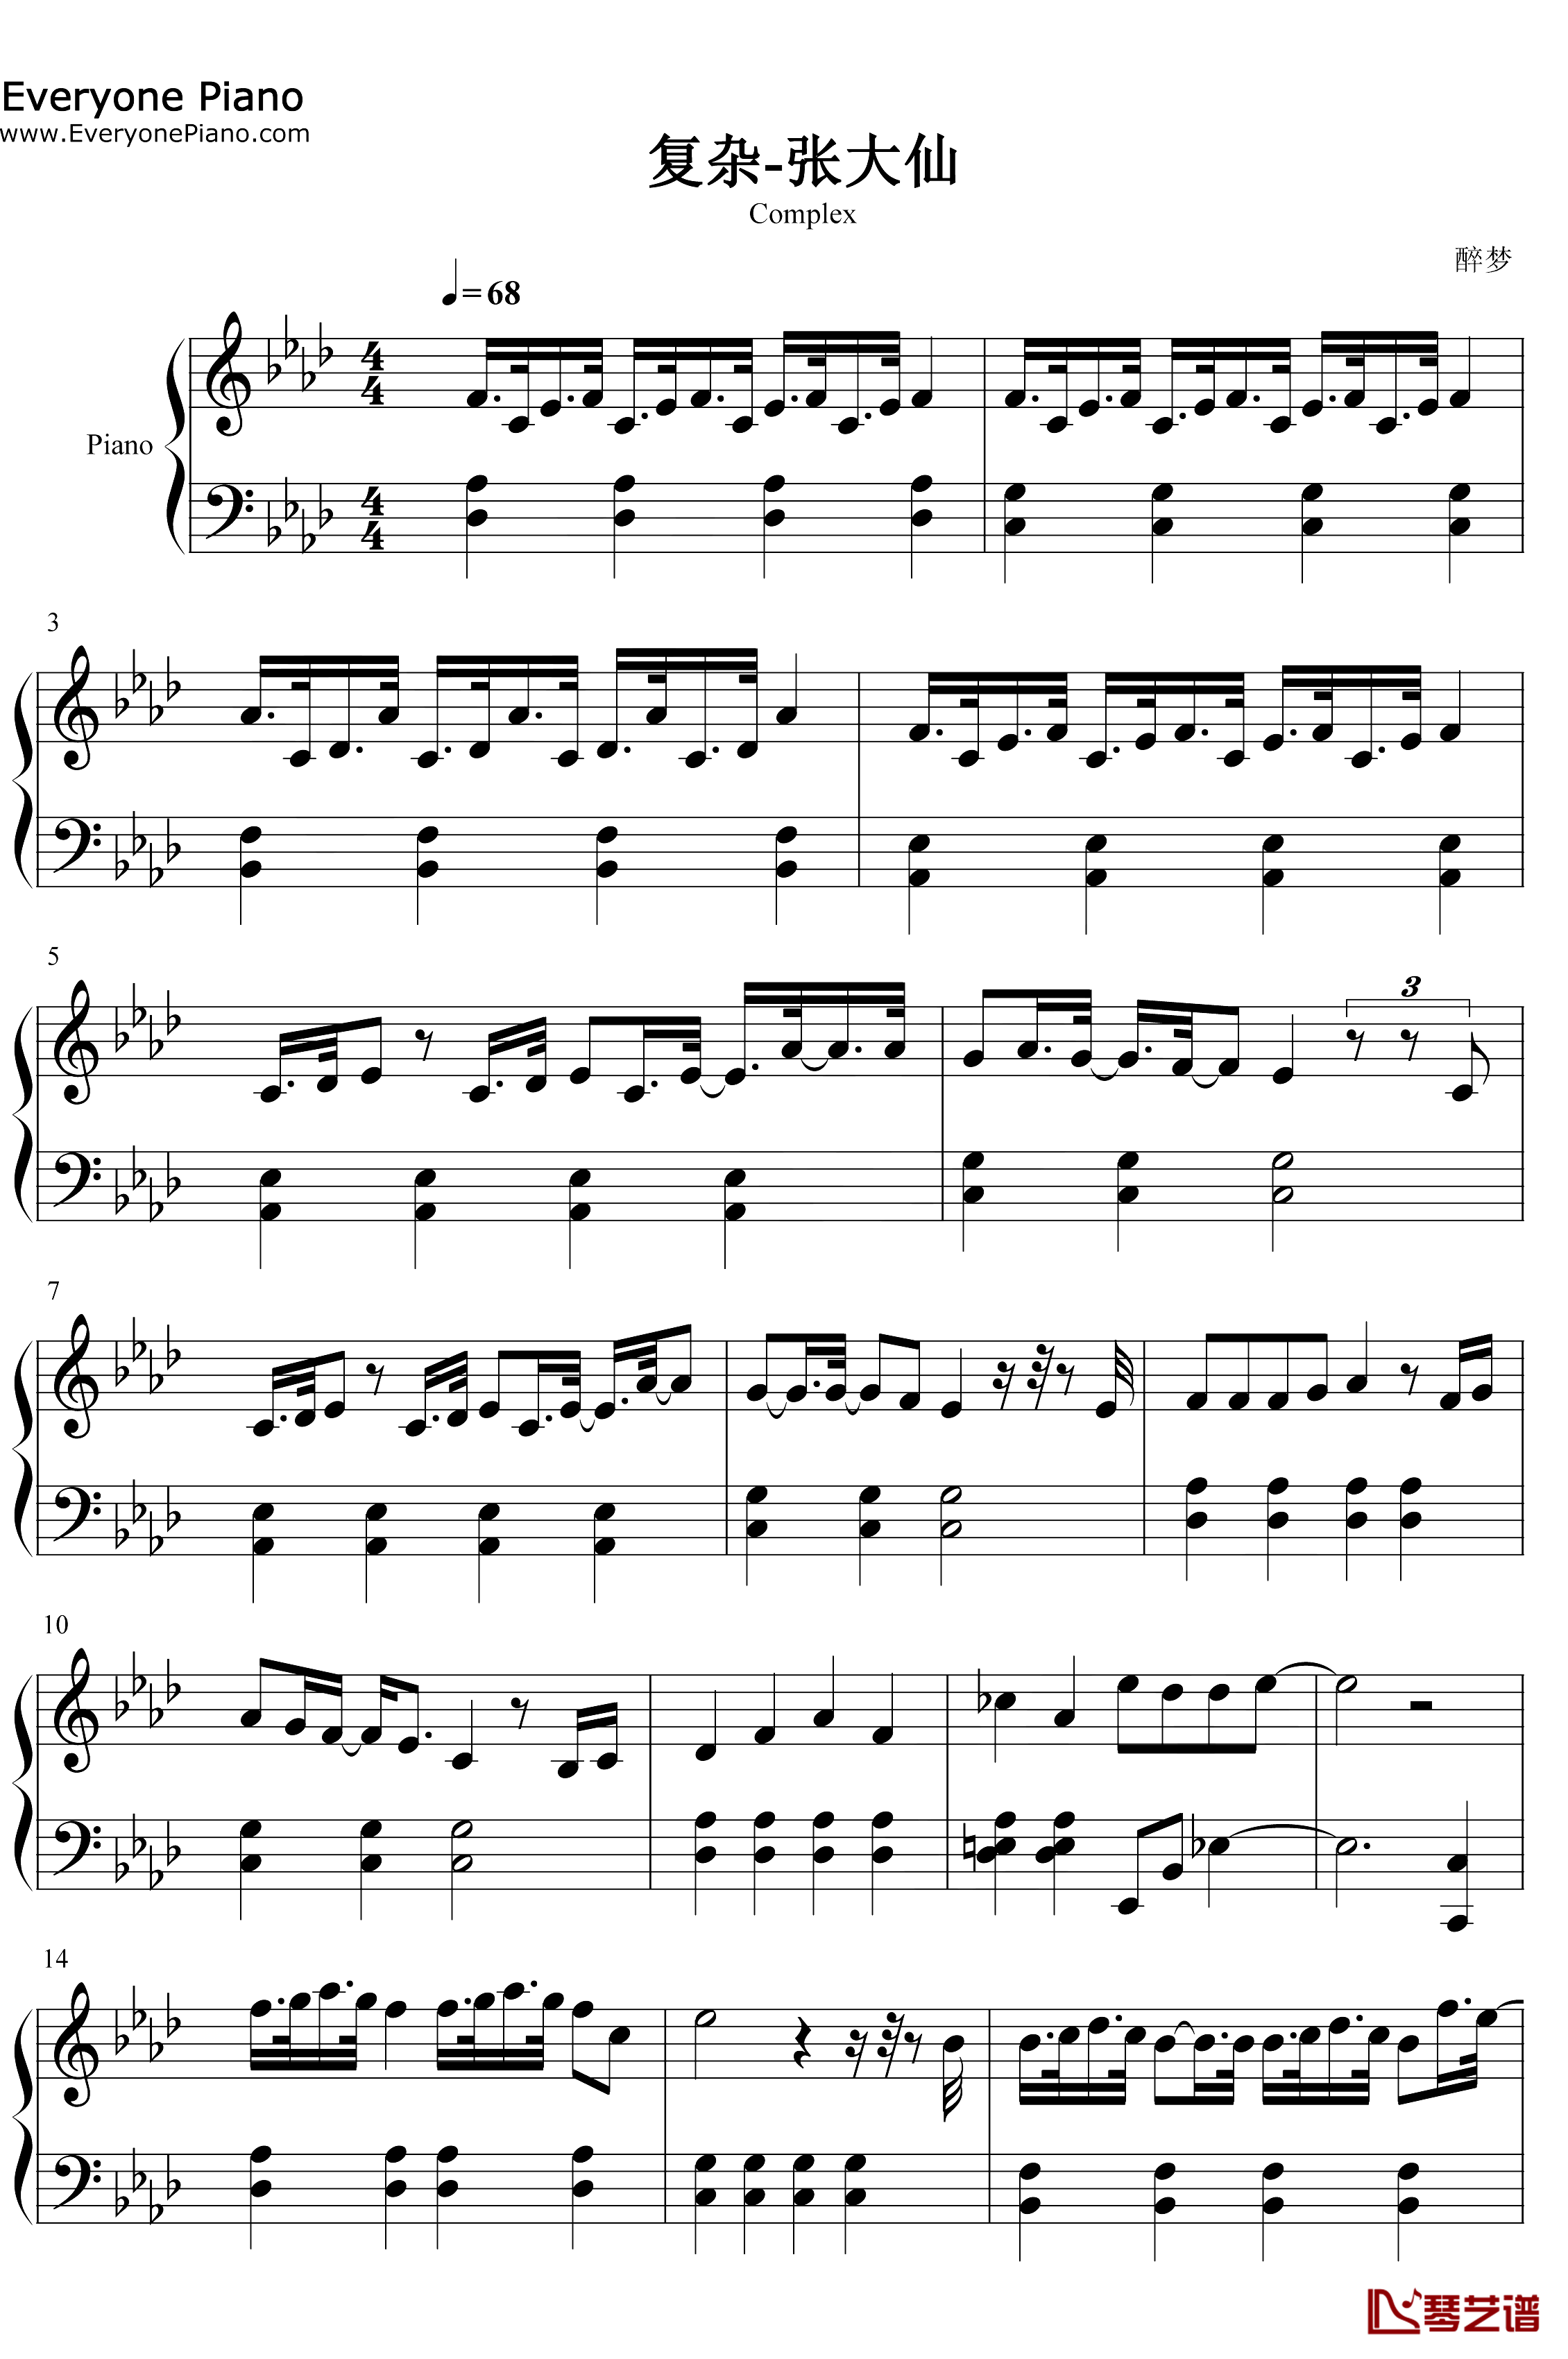 复杂钢琴谱-张大仙-能听见的心路历程-张大仙1